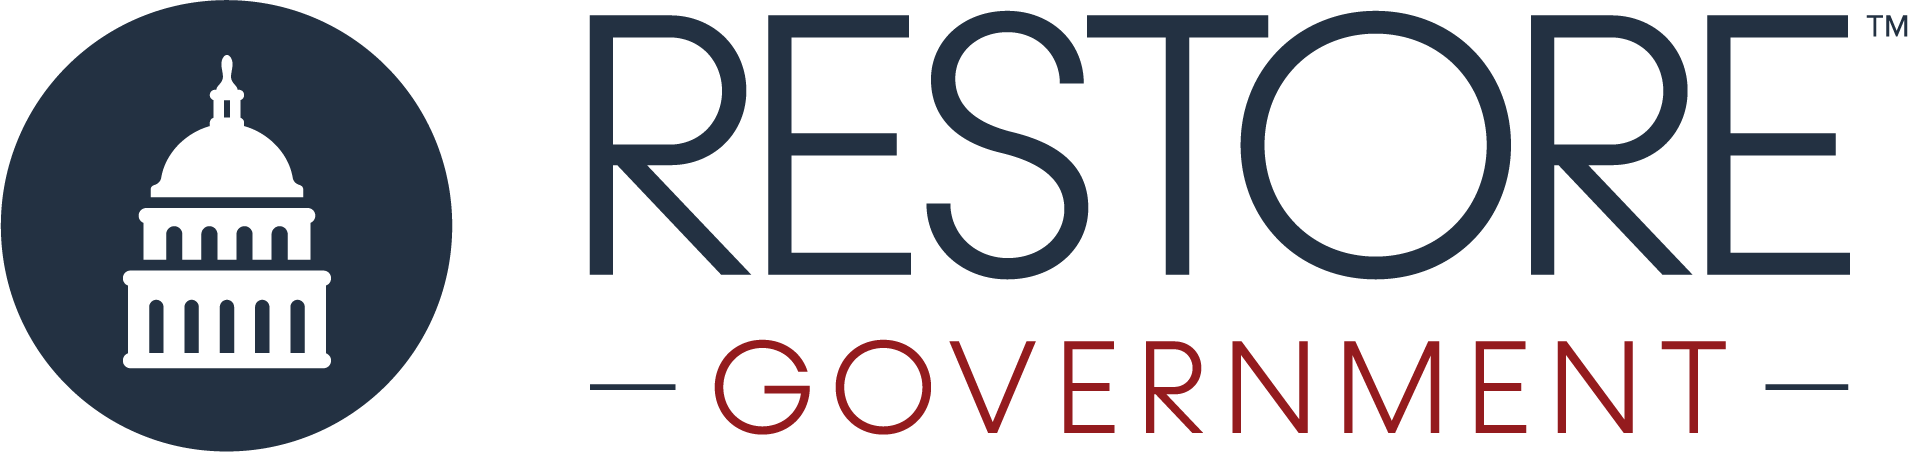 Restore Government